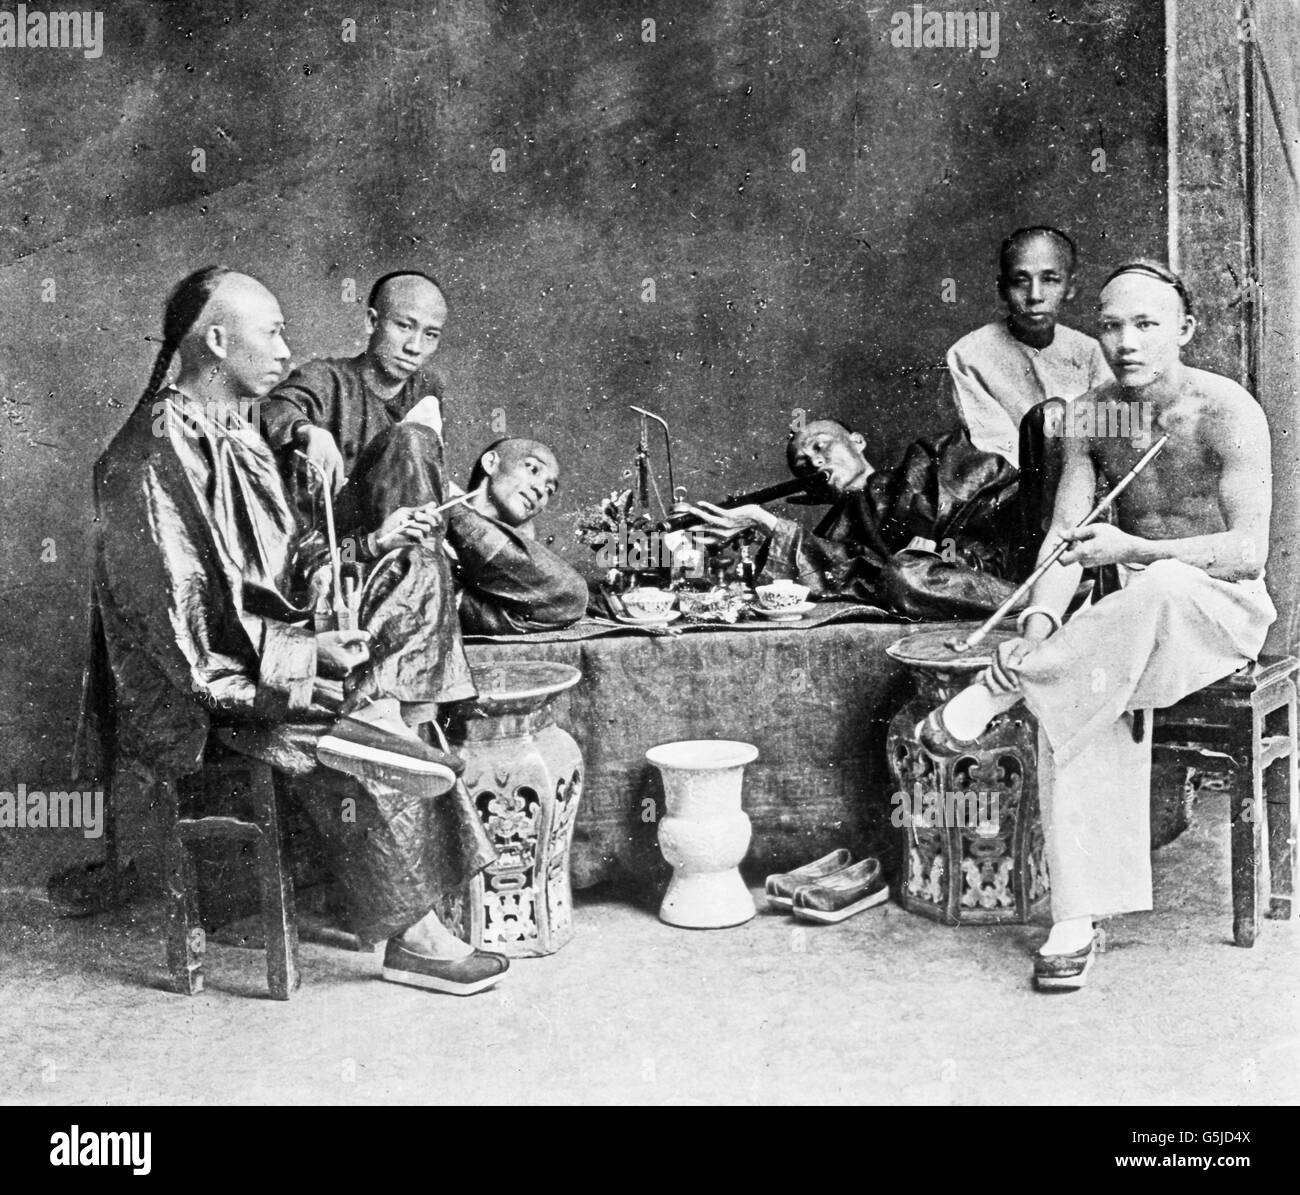 Chinesen rauchen oppio in einer Opiumhöhle, Cina 1910er Jahre. Fumatori cinesi in un'oppio den, Cina 1910s. Foto Stock